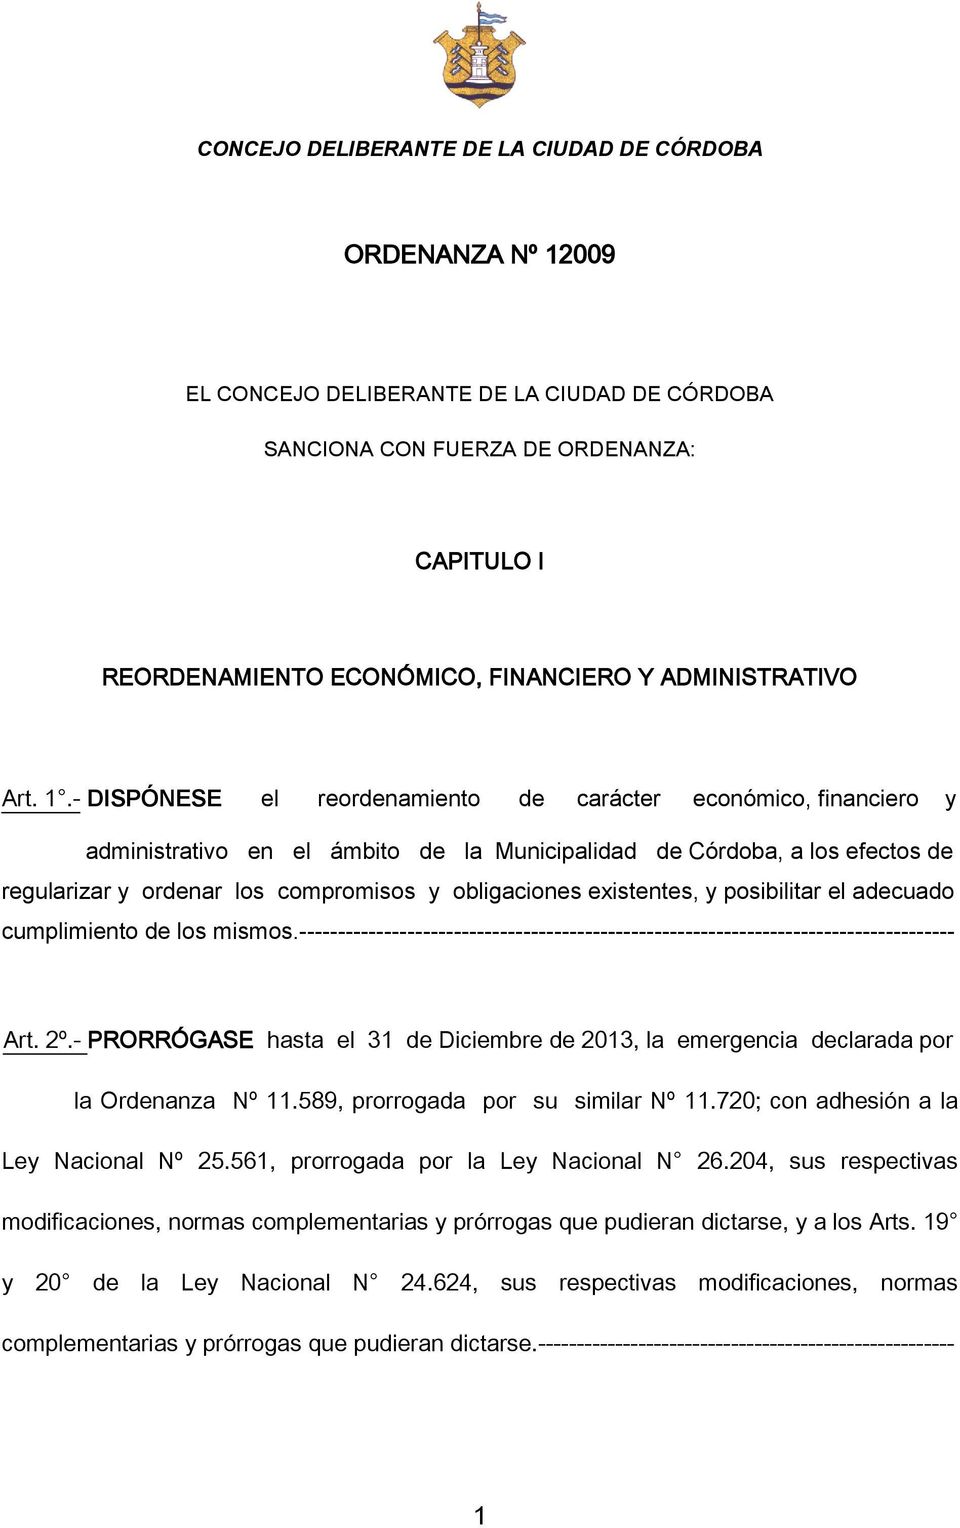 - DISPÓNESE el reordenamiento de carácter económico, financiero y administrativo en el ámbito de la Municipalidad de Córdoba, a los efectos de regularizar y ordenar los compromisos y obligaciones